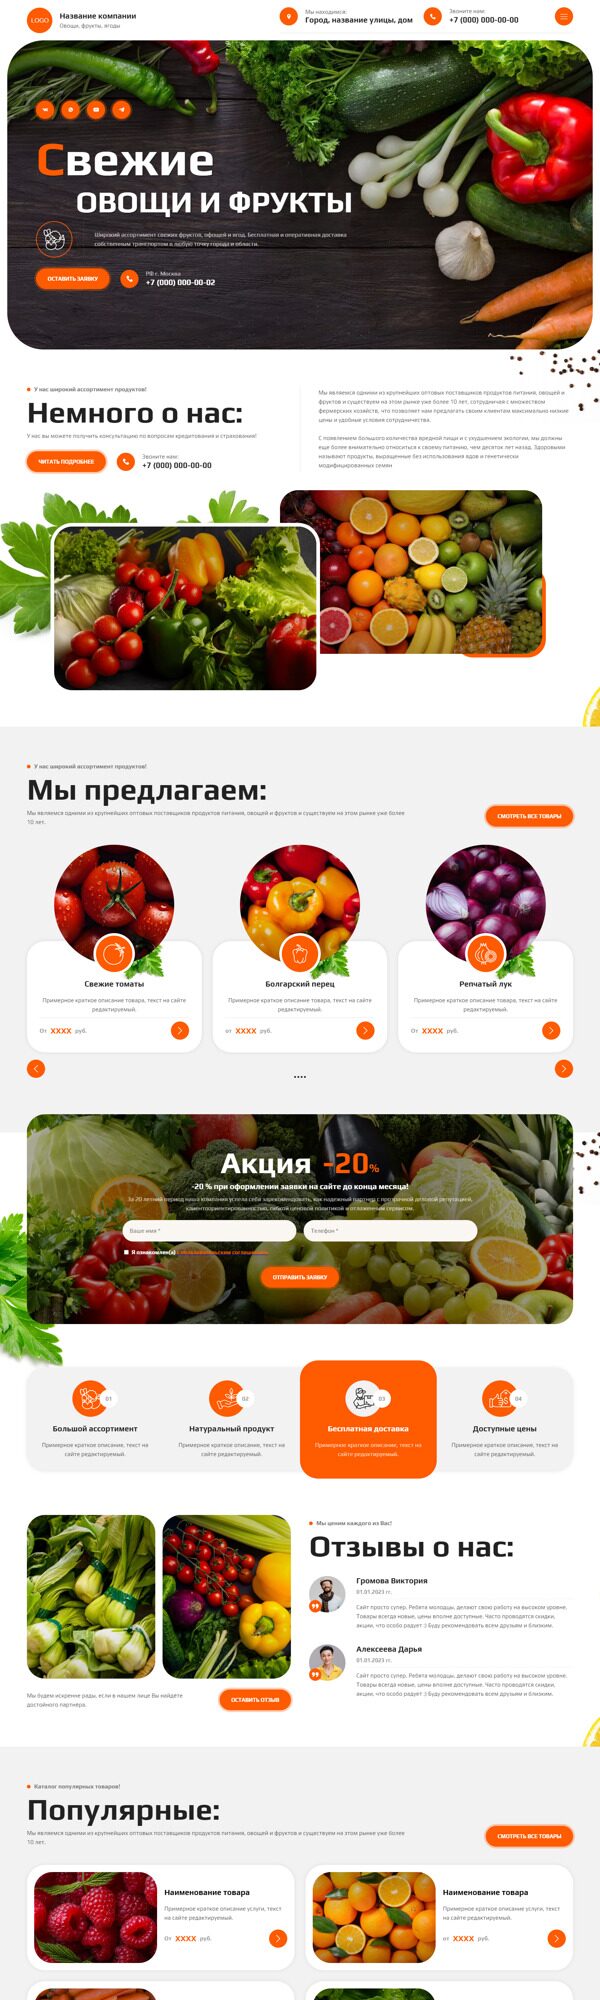 Готовый Сайт-Бизнес № 5905901 - Овощи, фрукты, орехи, грибы (Десктопная версия)